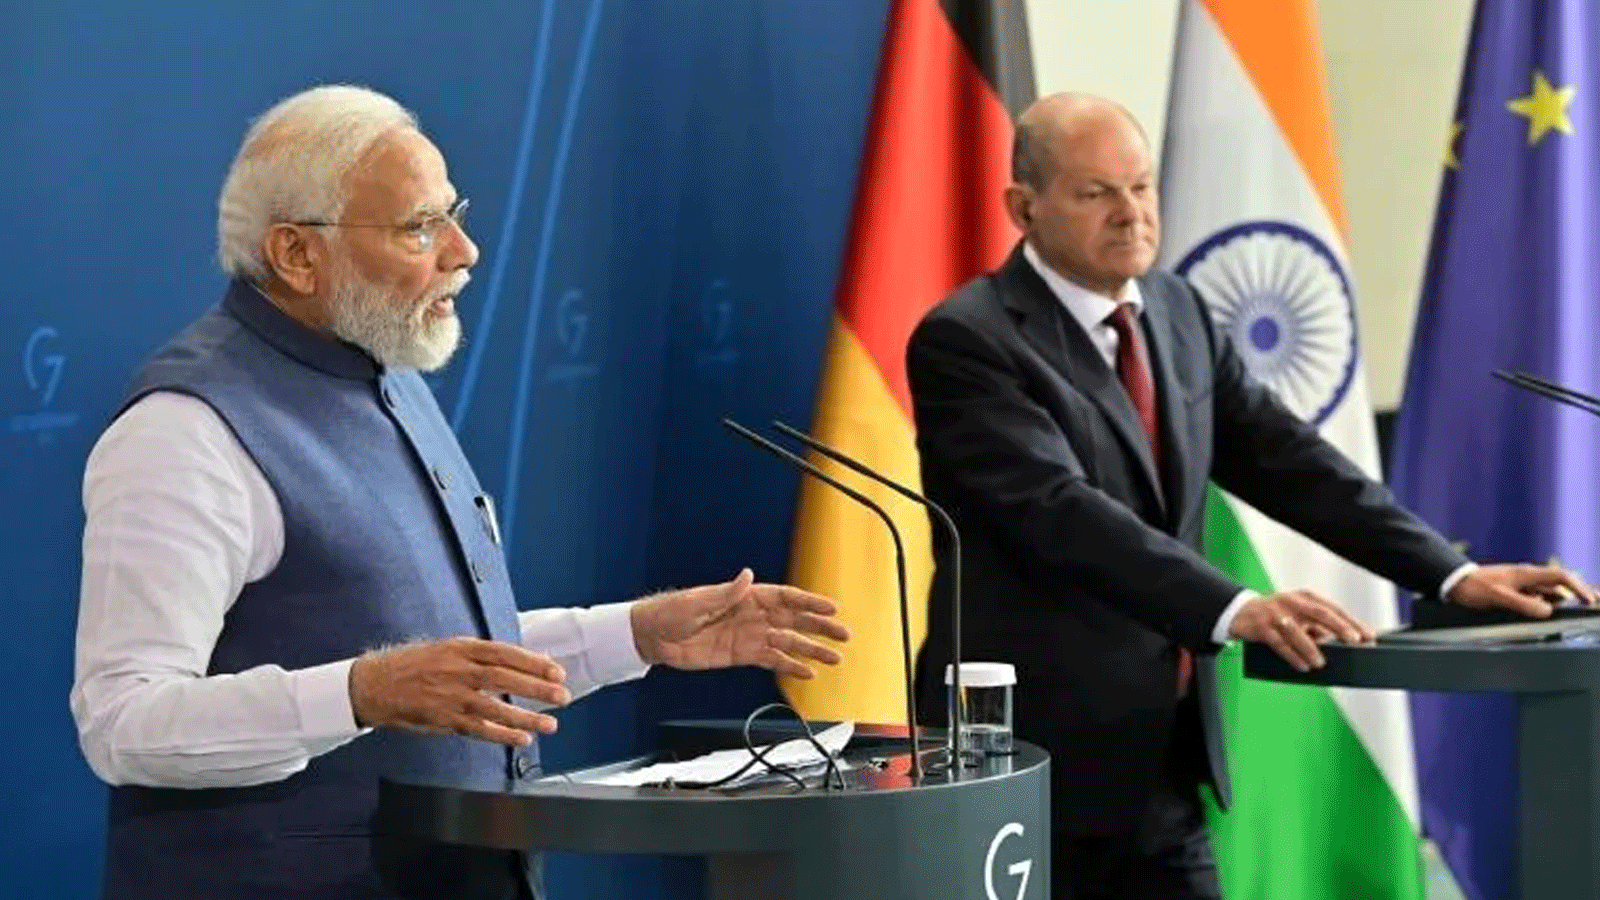 رئيس الوزراء الهندي ناريندرا مودي يدعو لإجراء محادثات لإنهاء الحرب في أوكرانيا، بعد لقاء المستشار الألماني أولاف شولتز في برلين في بداية جولة أوروبية